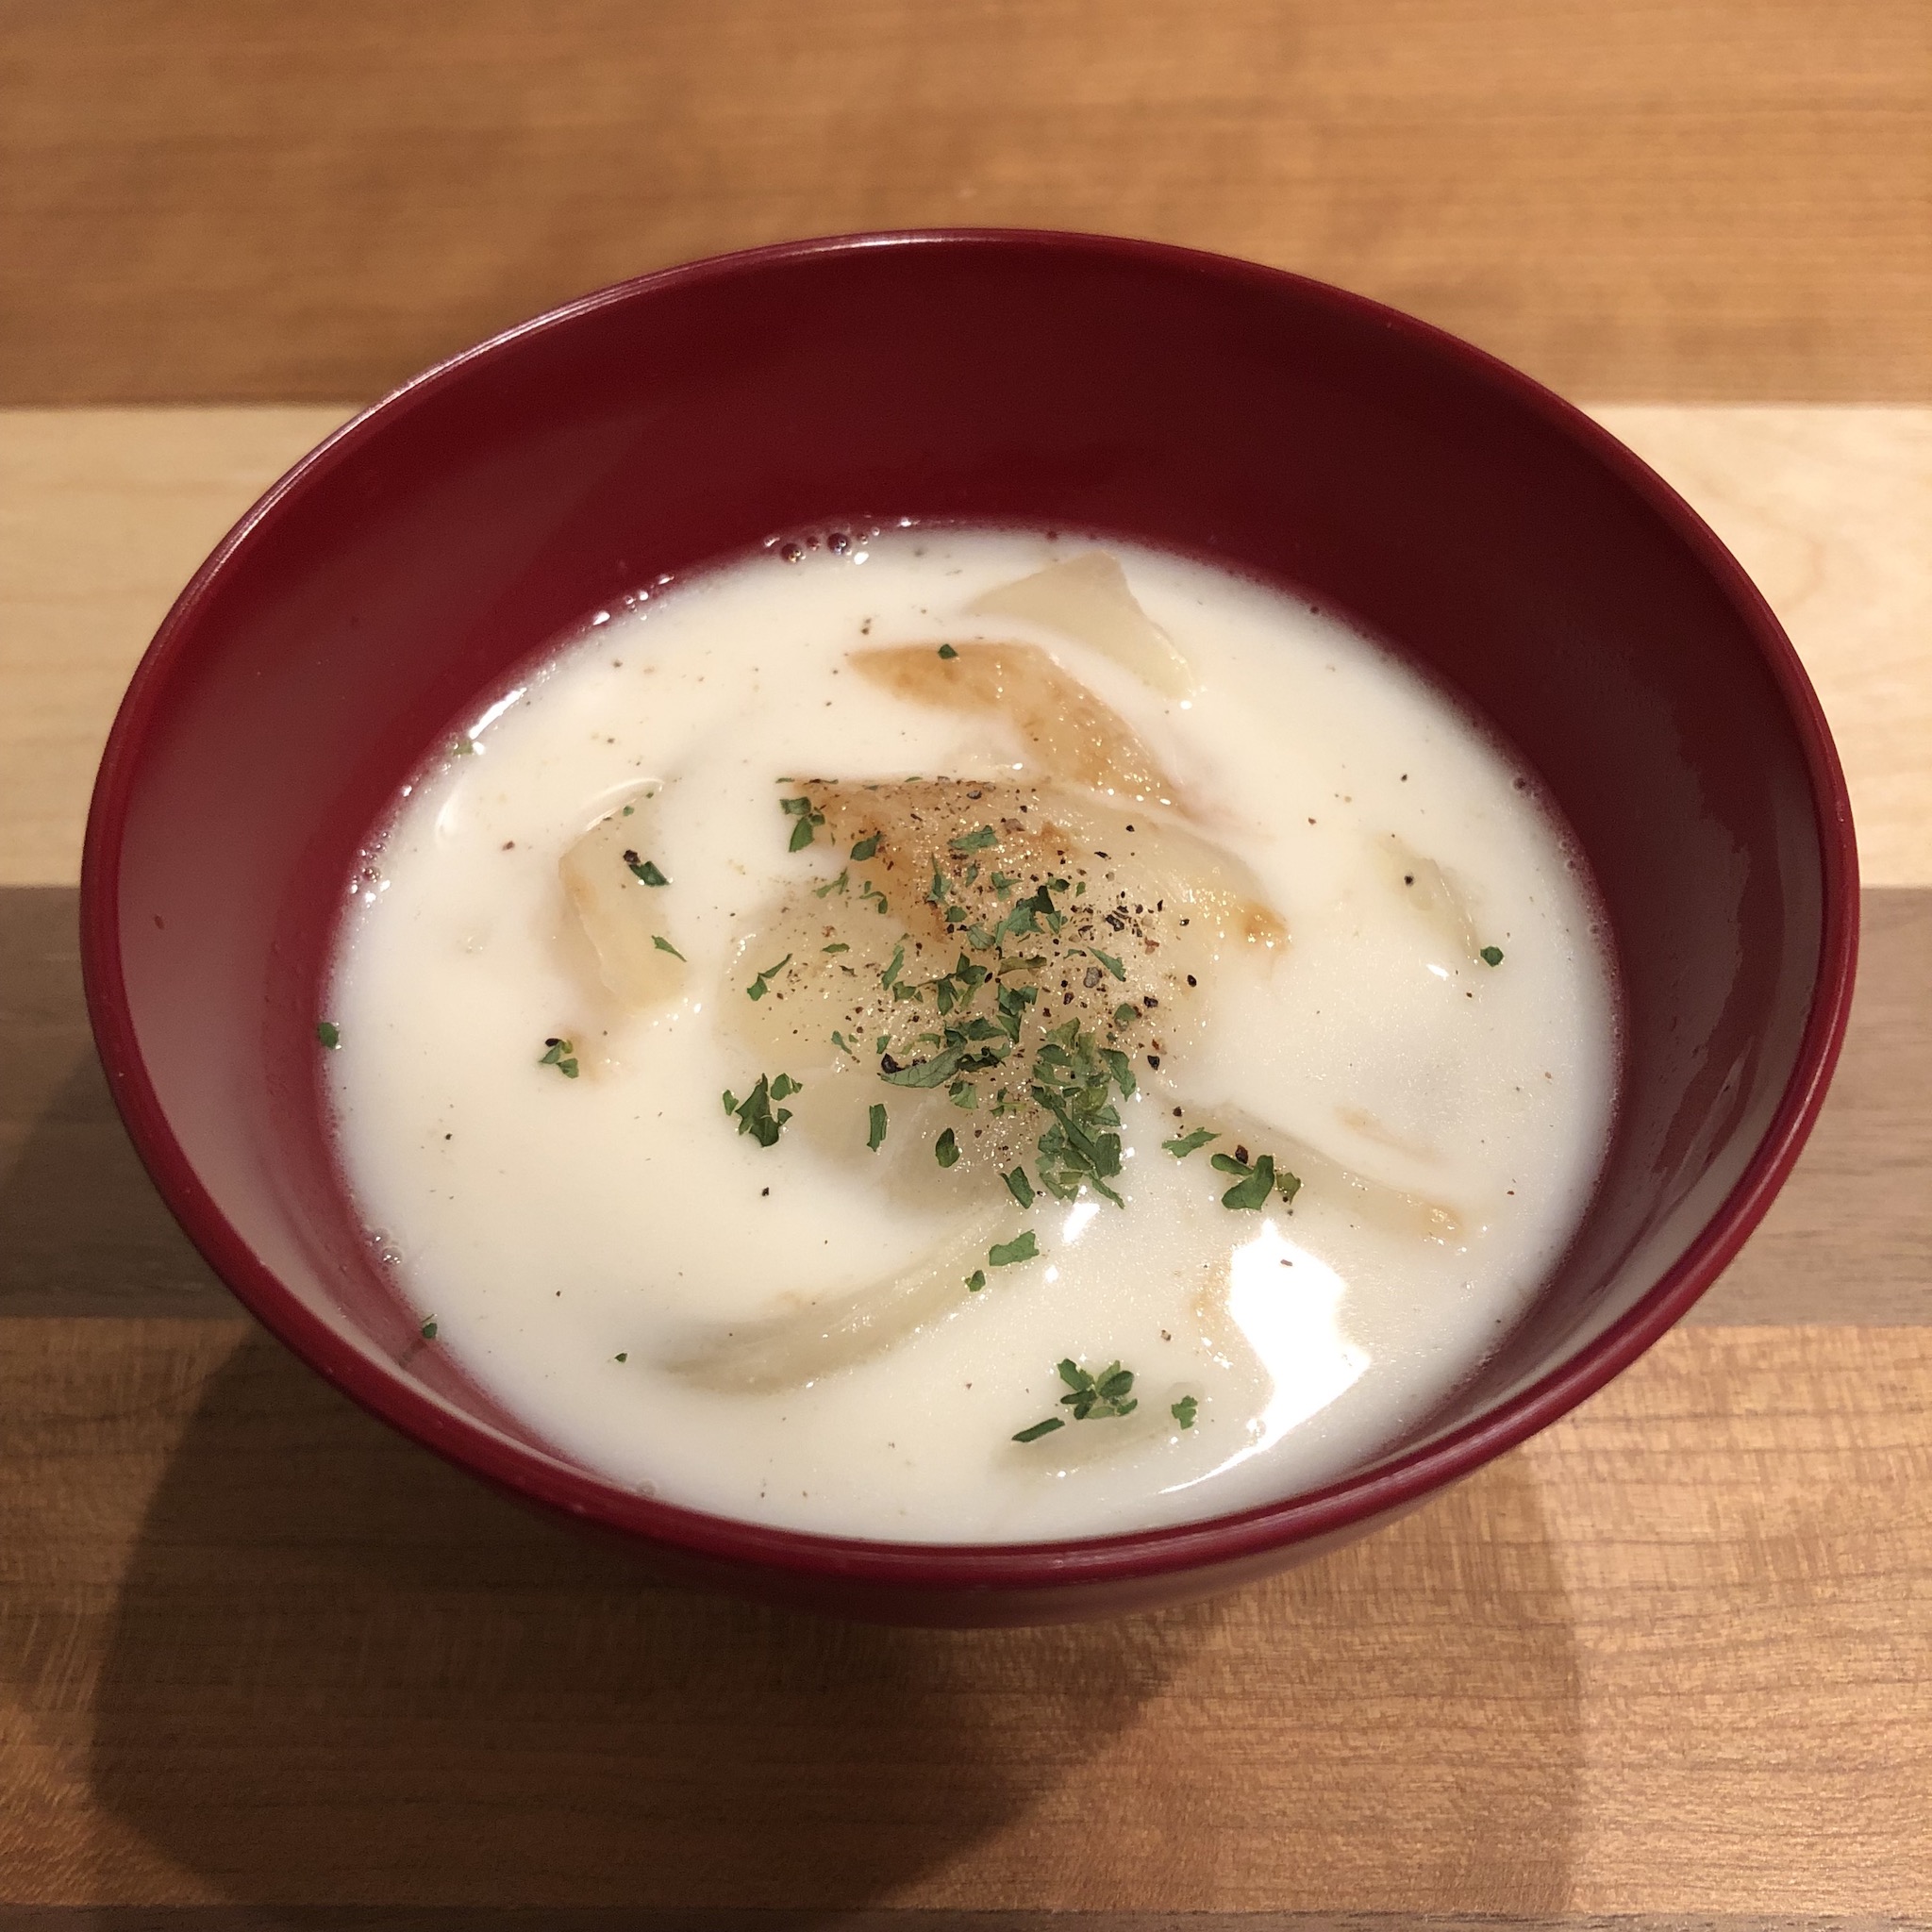 NEW ONION miso soup